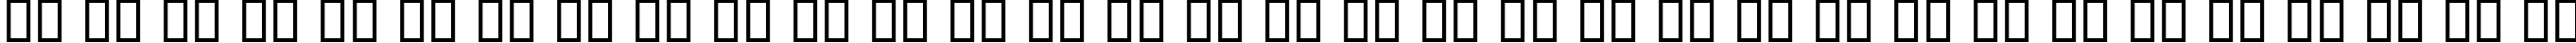 Пример написания русского алфавита шрифтом B Fantezy